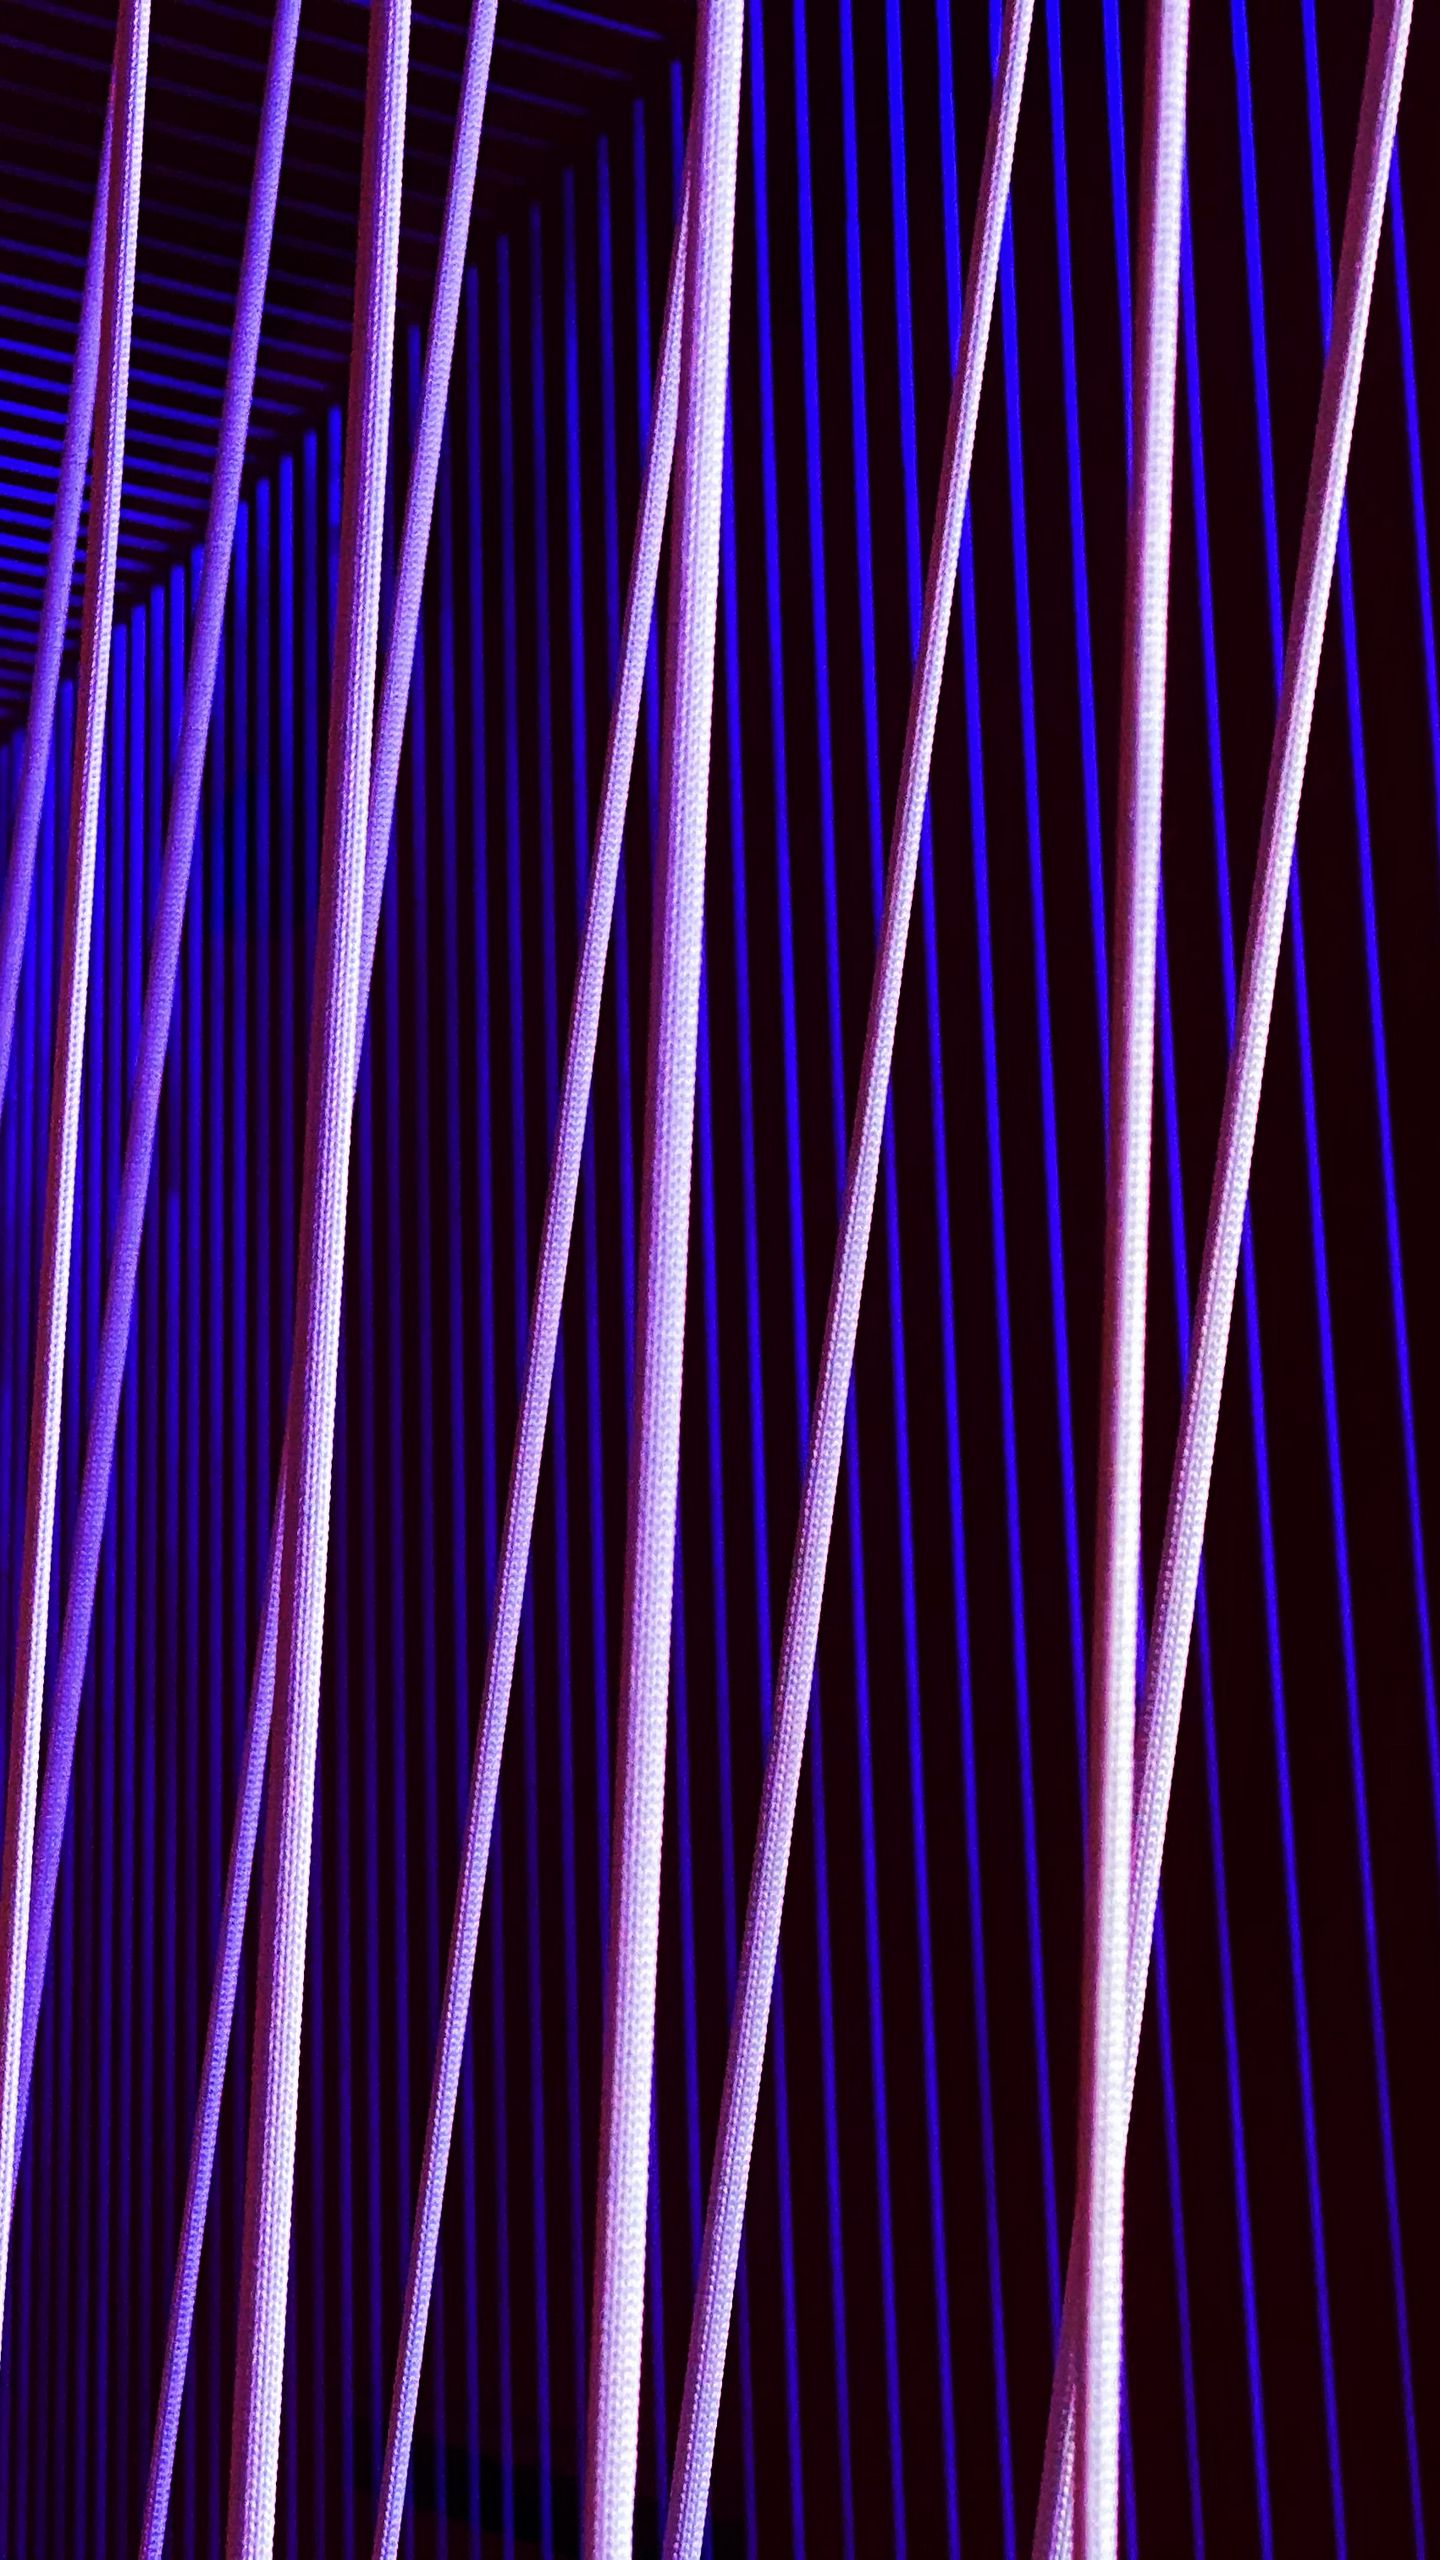 Neon stripes: Với hình ảnh Neon stripes bạn sẽ được trải nghiệm một không gian đầy màu sắc và đẹp mắt với những đường nét neon sáng lấp lánh. Xem hình để nhận thức được sự hoàn hảo và khả năng tạo ra những không gian cực kỳ cuốn hút của nghệ sĩ.